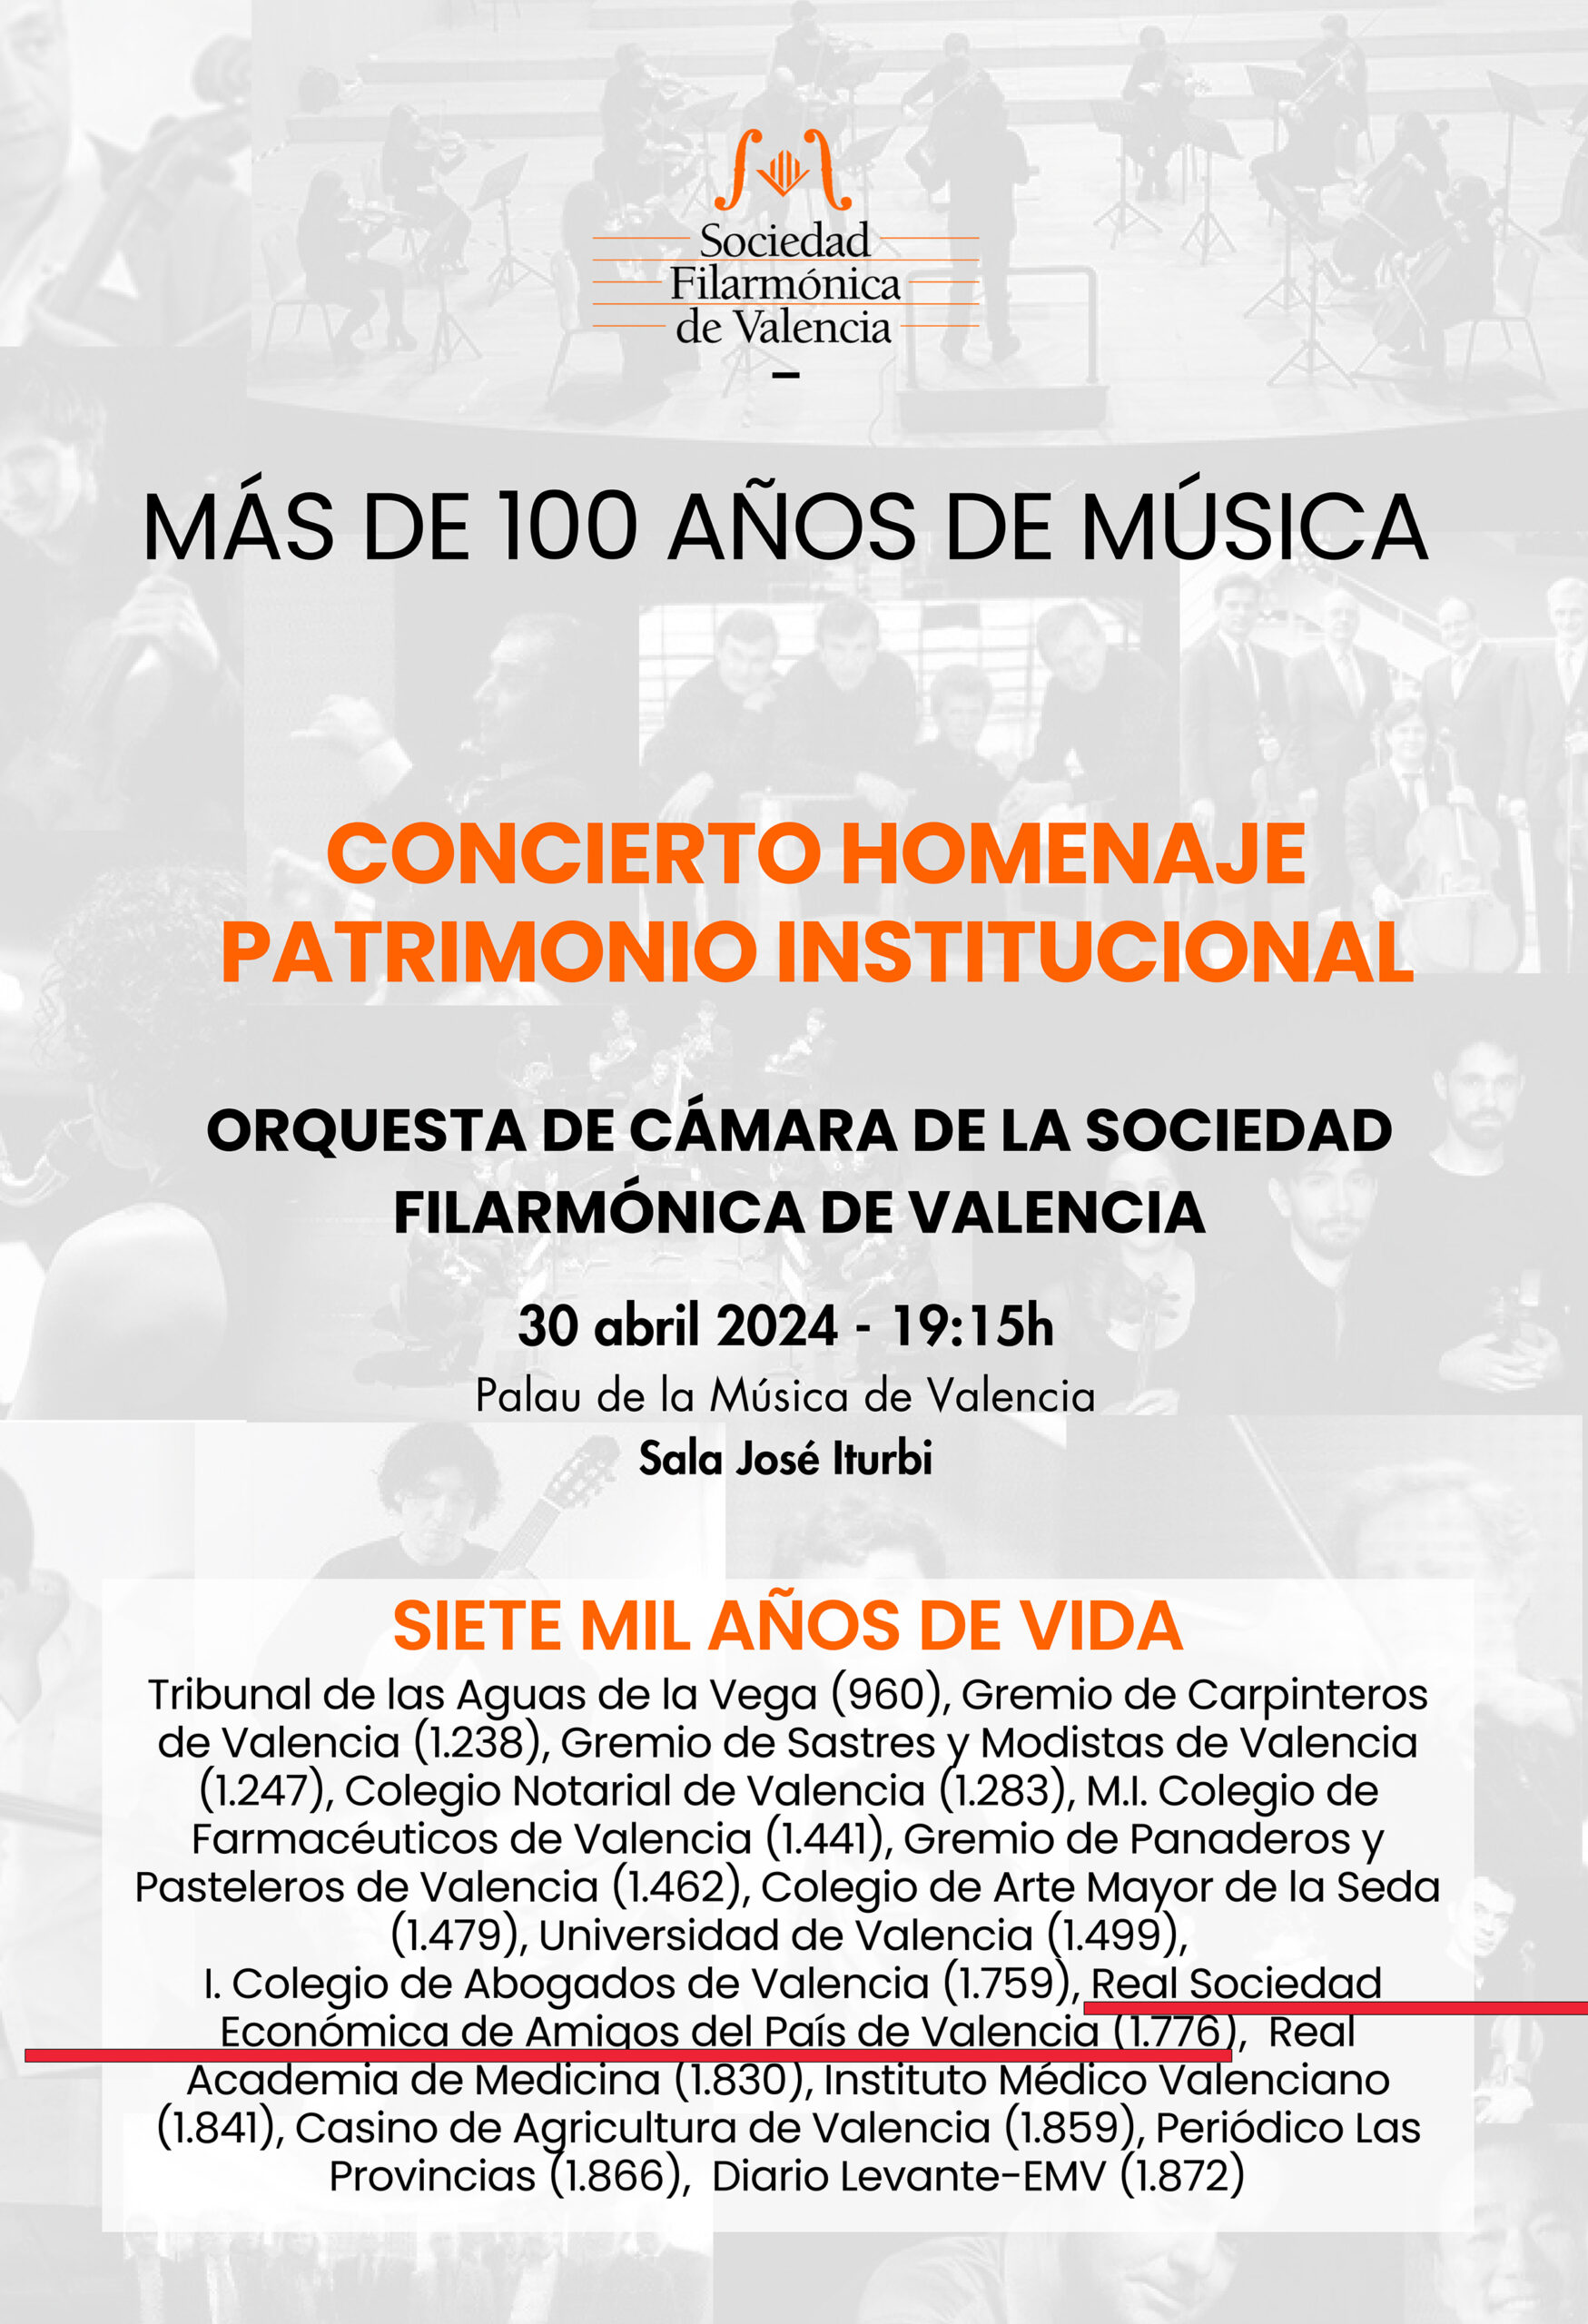 30 de abril. Concierto Homenaje Patrimonio Institucional organizado por la Sociedad Filarmónica de Valencia.